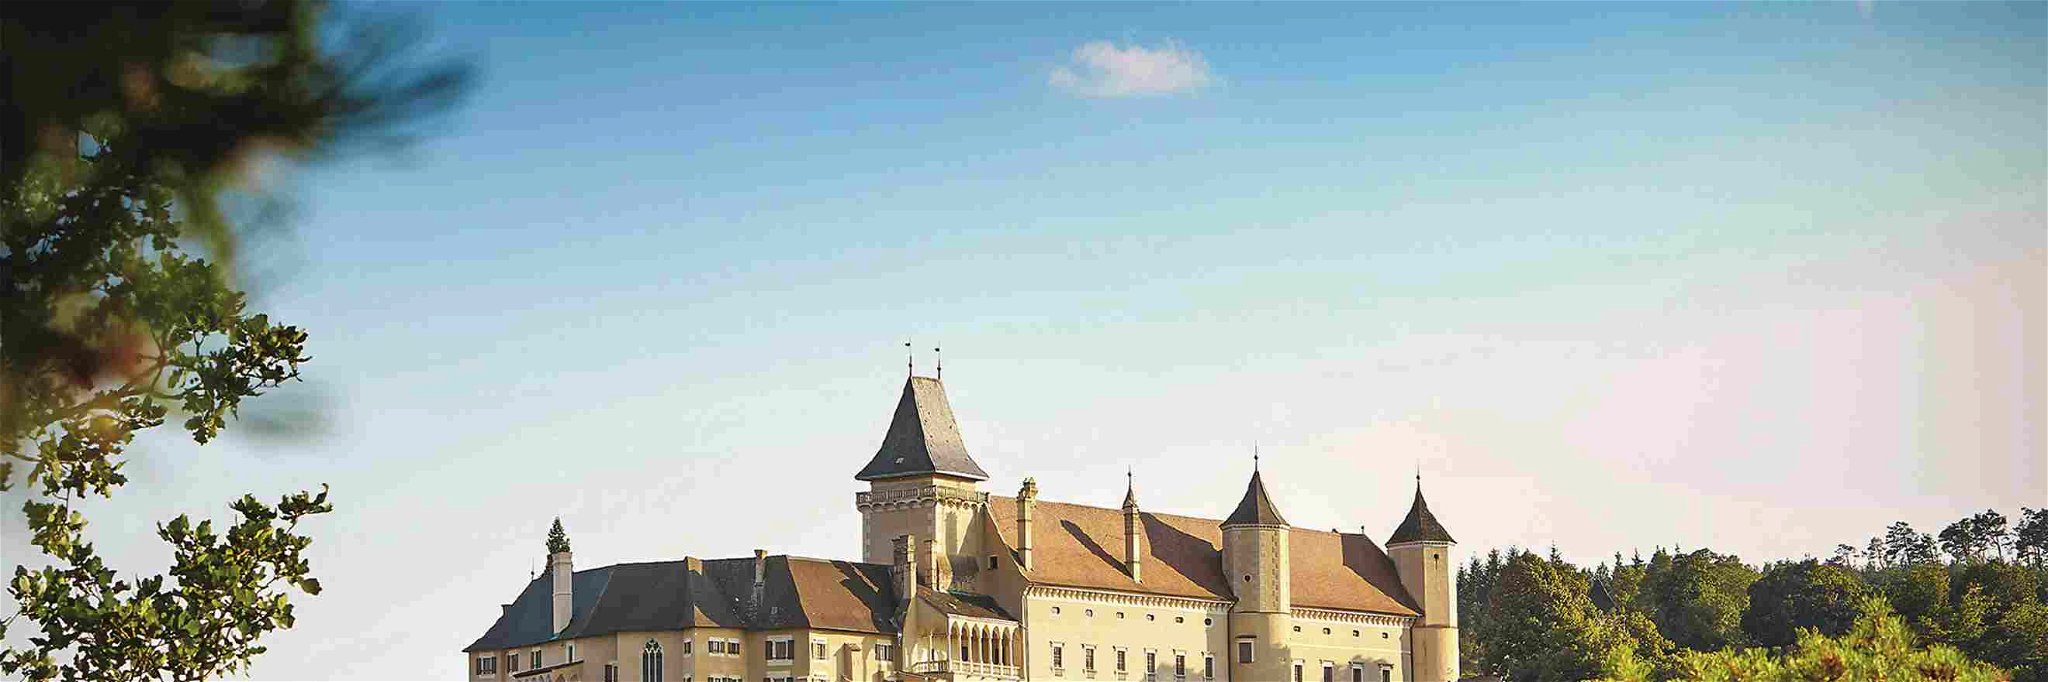 Die 1150 errichtete Burg wurde im 16. Jahrhundert zu einem Schloss umgestaltet. Seit 1681 im Besitz  der Familie Hoyos-Sprinzenstein.